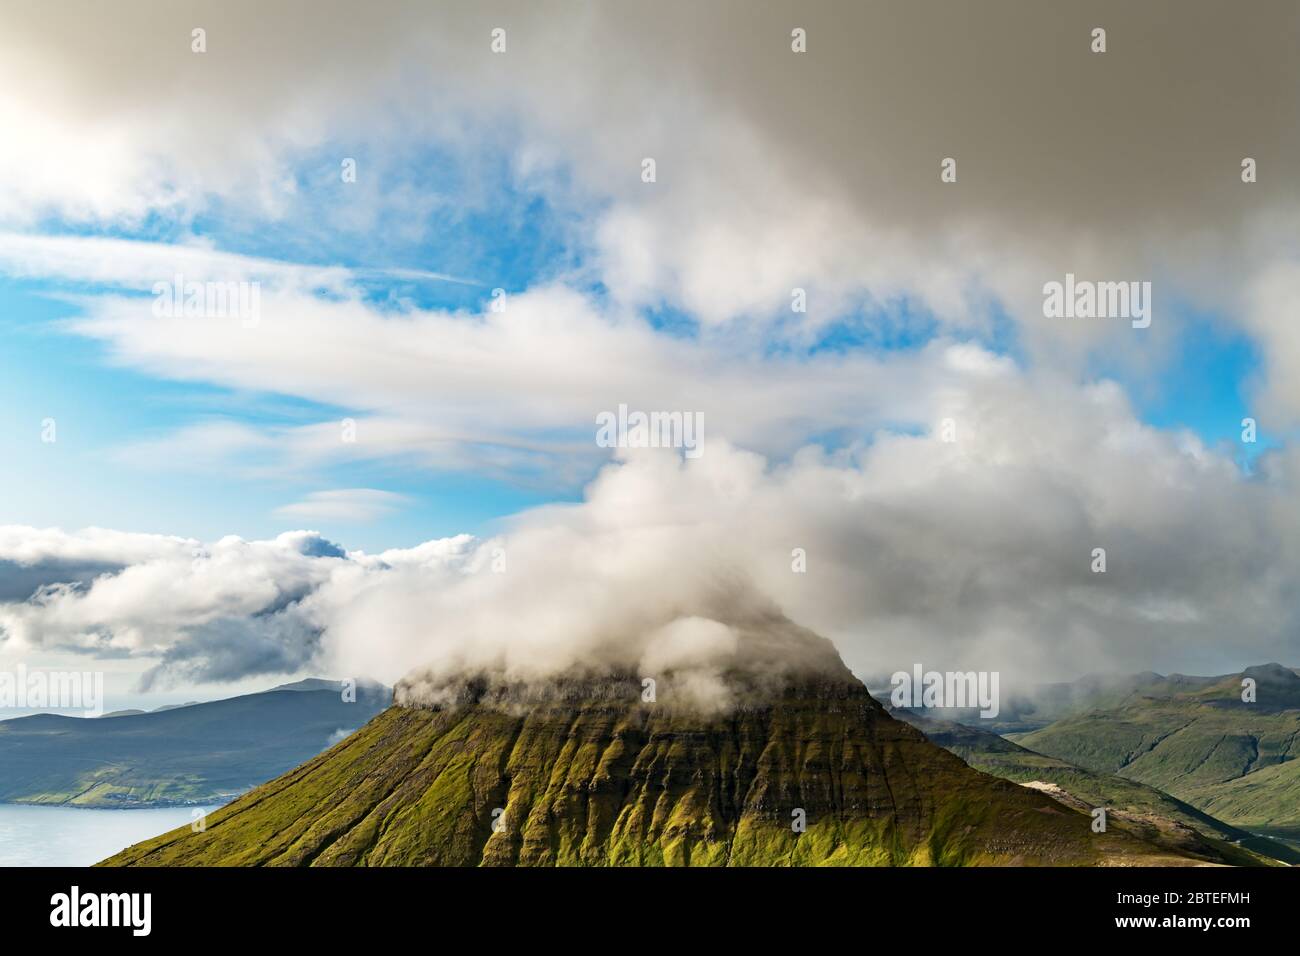 Foggy Mountain peaks et les nuages couvrant la mer et les montagnes. Panoramical view à partir de la célèbre place - Sornfelli sur Streymoy island, îles Féroé, Danemark. Photographie de paysage Banque D'Images